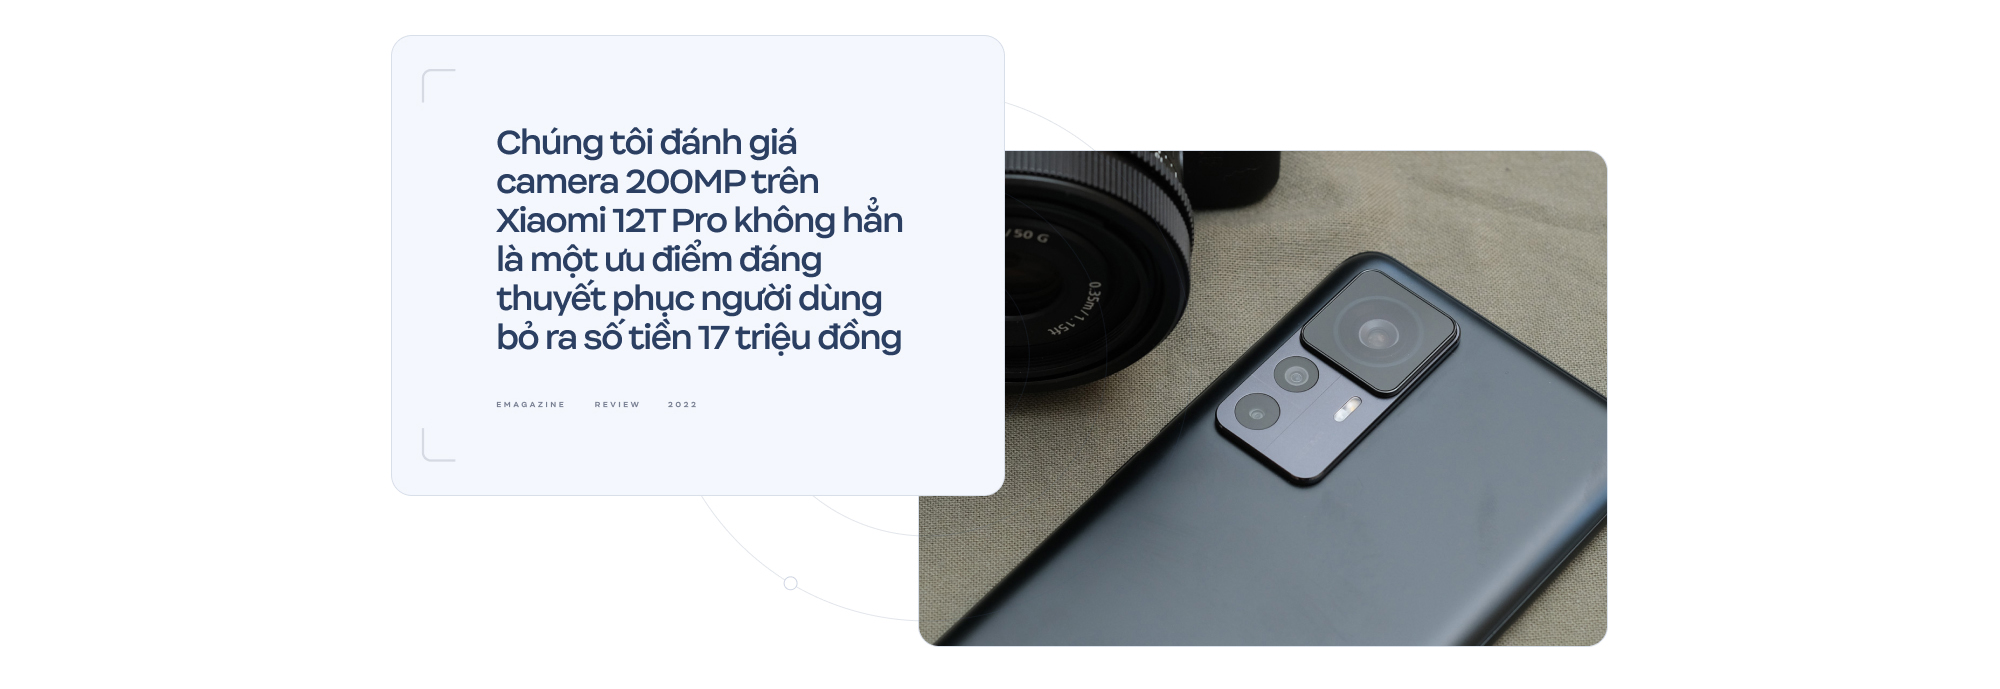 Đánh giá Xiaomi 12T Pro: Phần cứng “đỉnh” liệu có còn là thứ người dùng cần? - Ảnh 15.